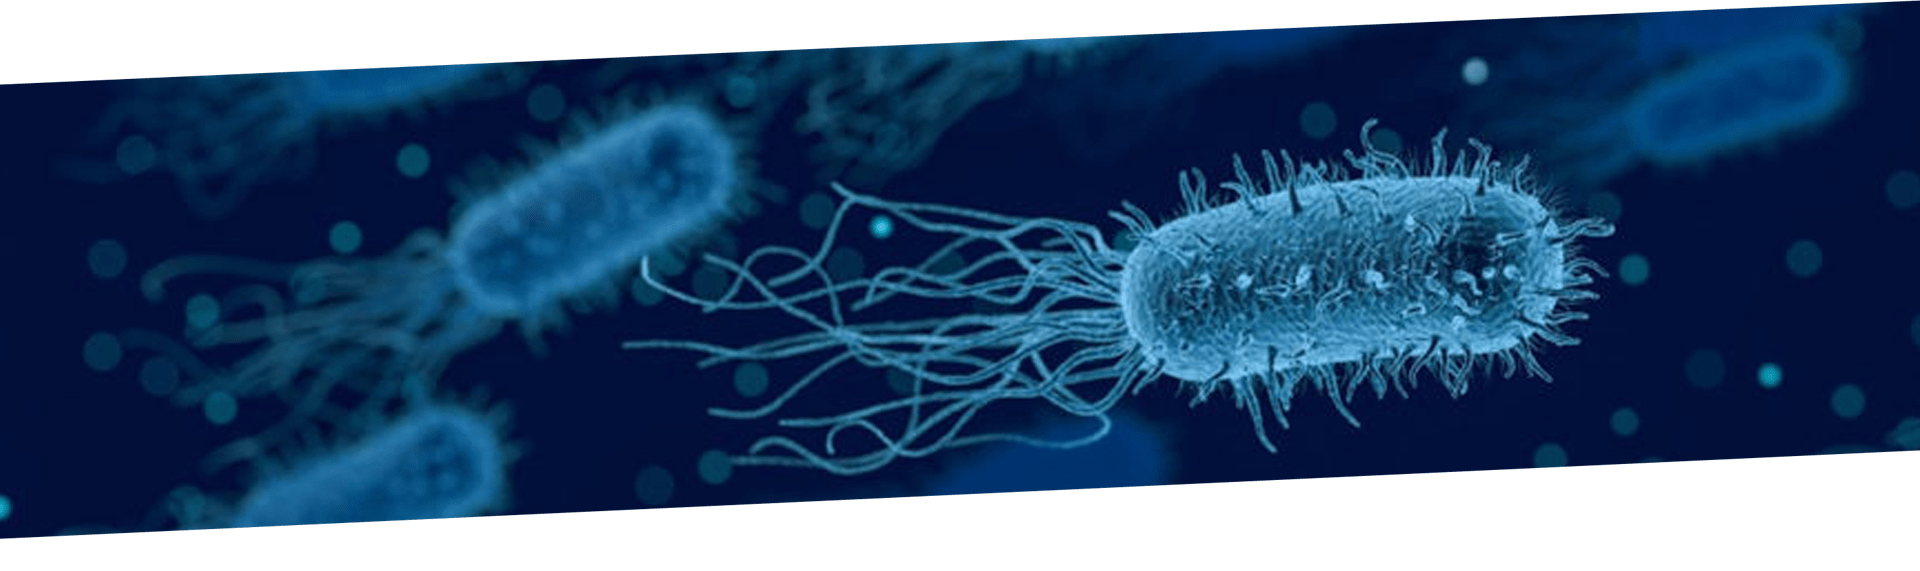 Legionella pneumophila: Patógeno emergente y causante de la enfermedad del legionario